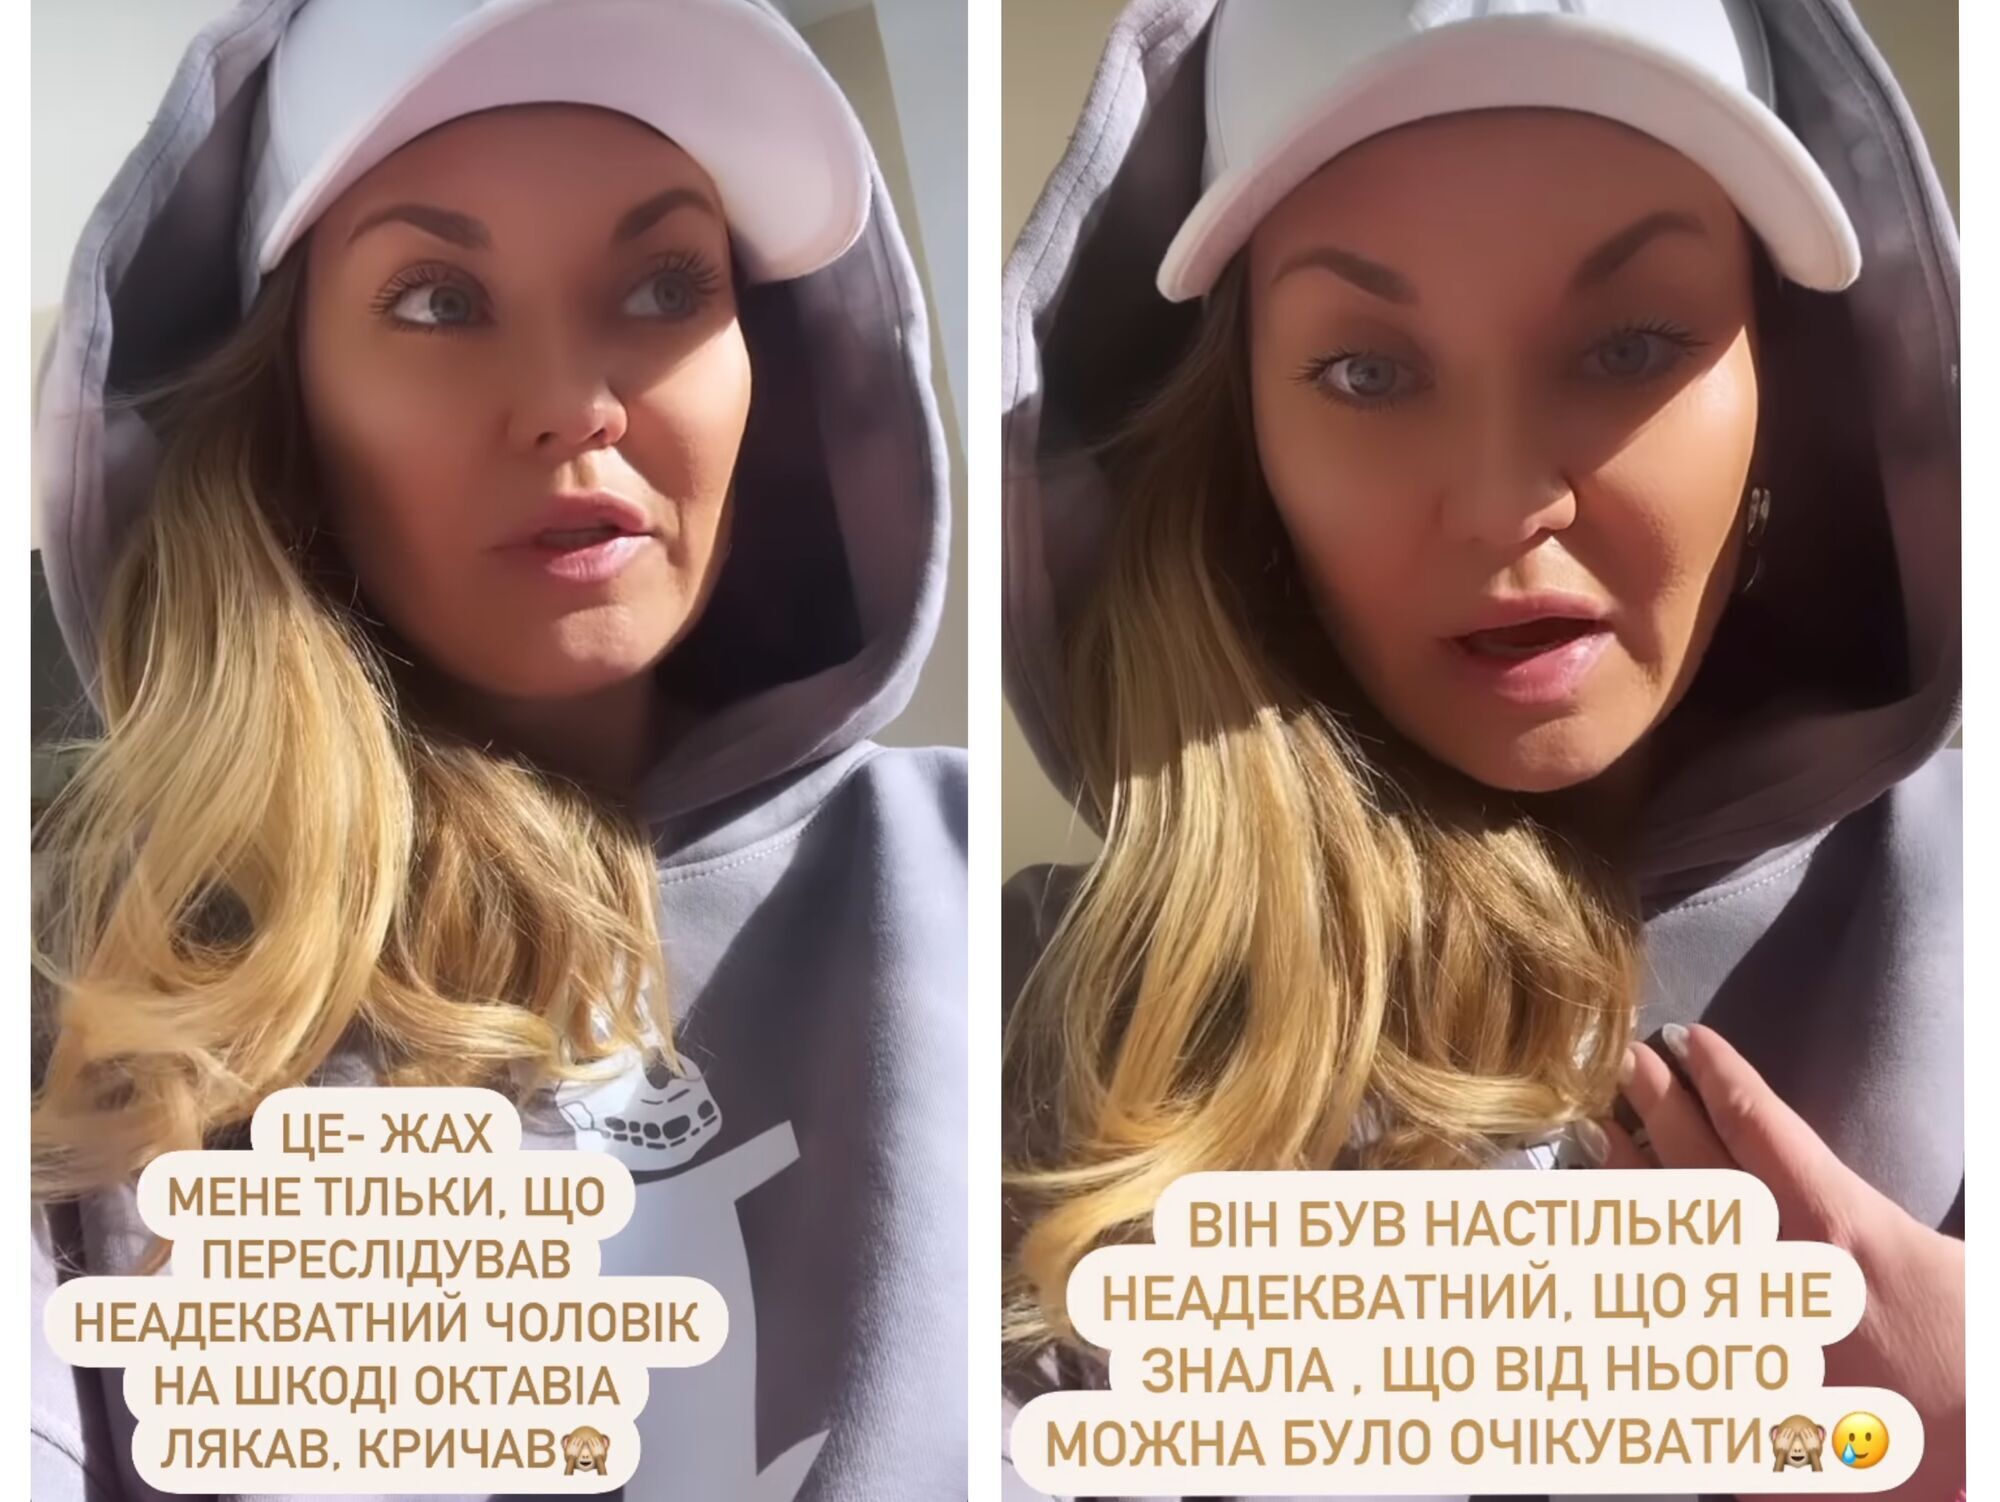 Актриса Саливанчук рассказала, как ее преследовал неадекватный мужчина на машине: кричал и бил кулаками по авто